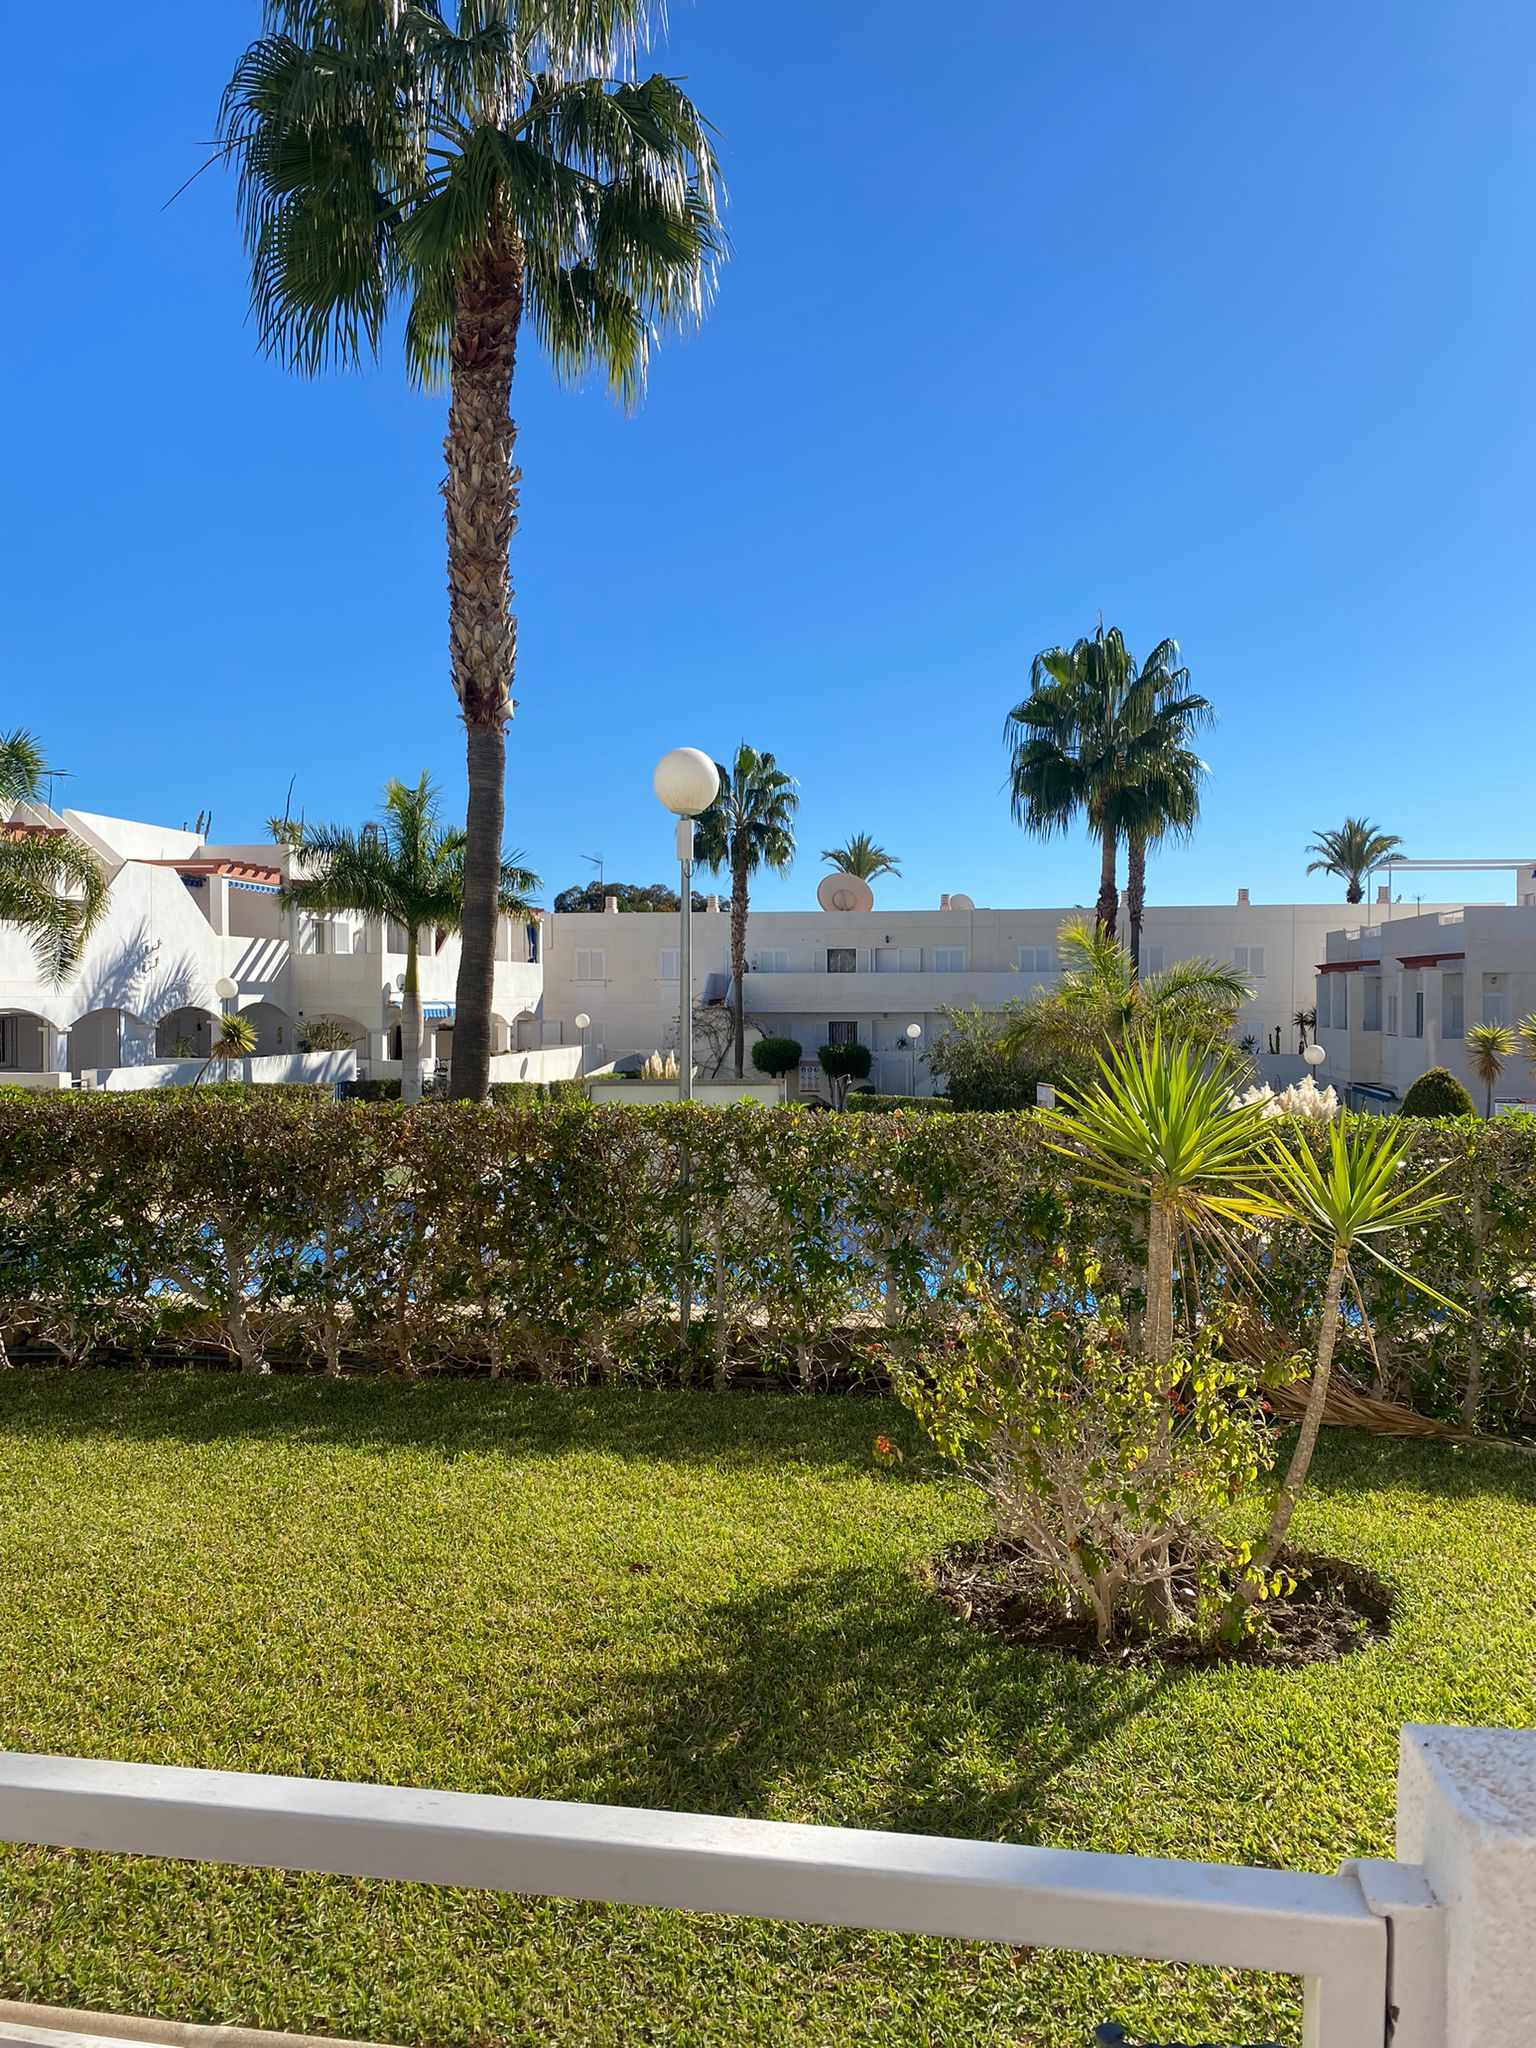 Apartamento ideal para disfrutar de dias soleados: Apartamento en alquiler en Mojácar, Almería